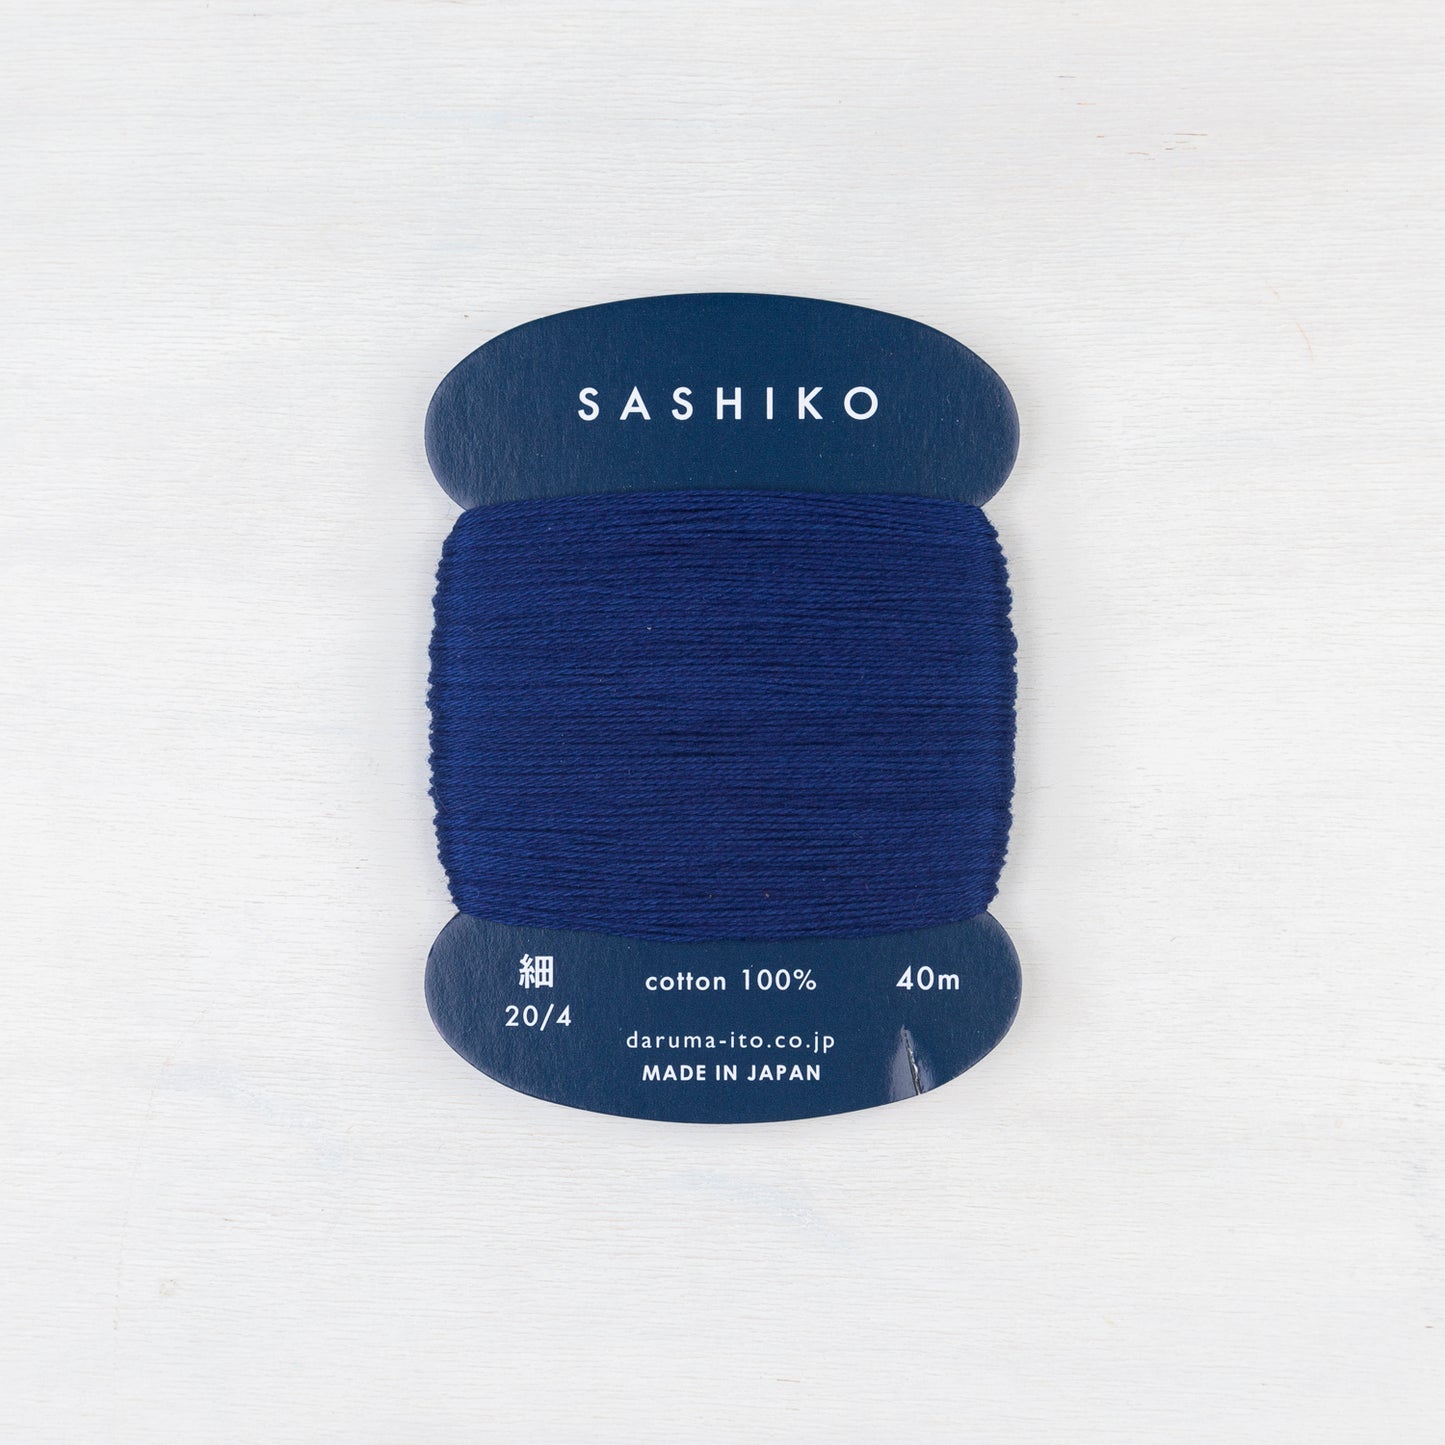 Thin Daruma Sashiko Thread Card